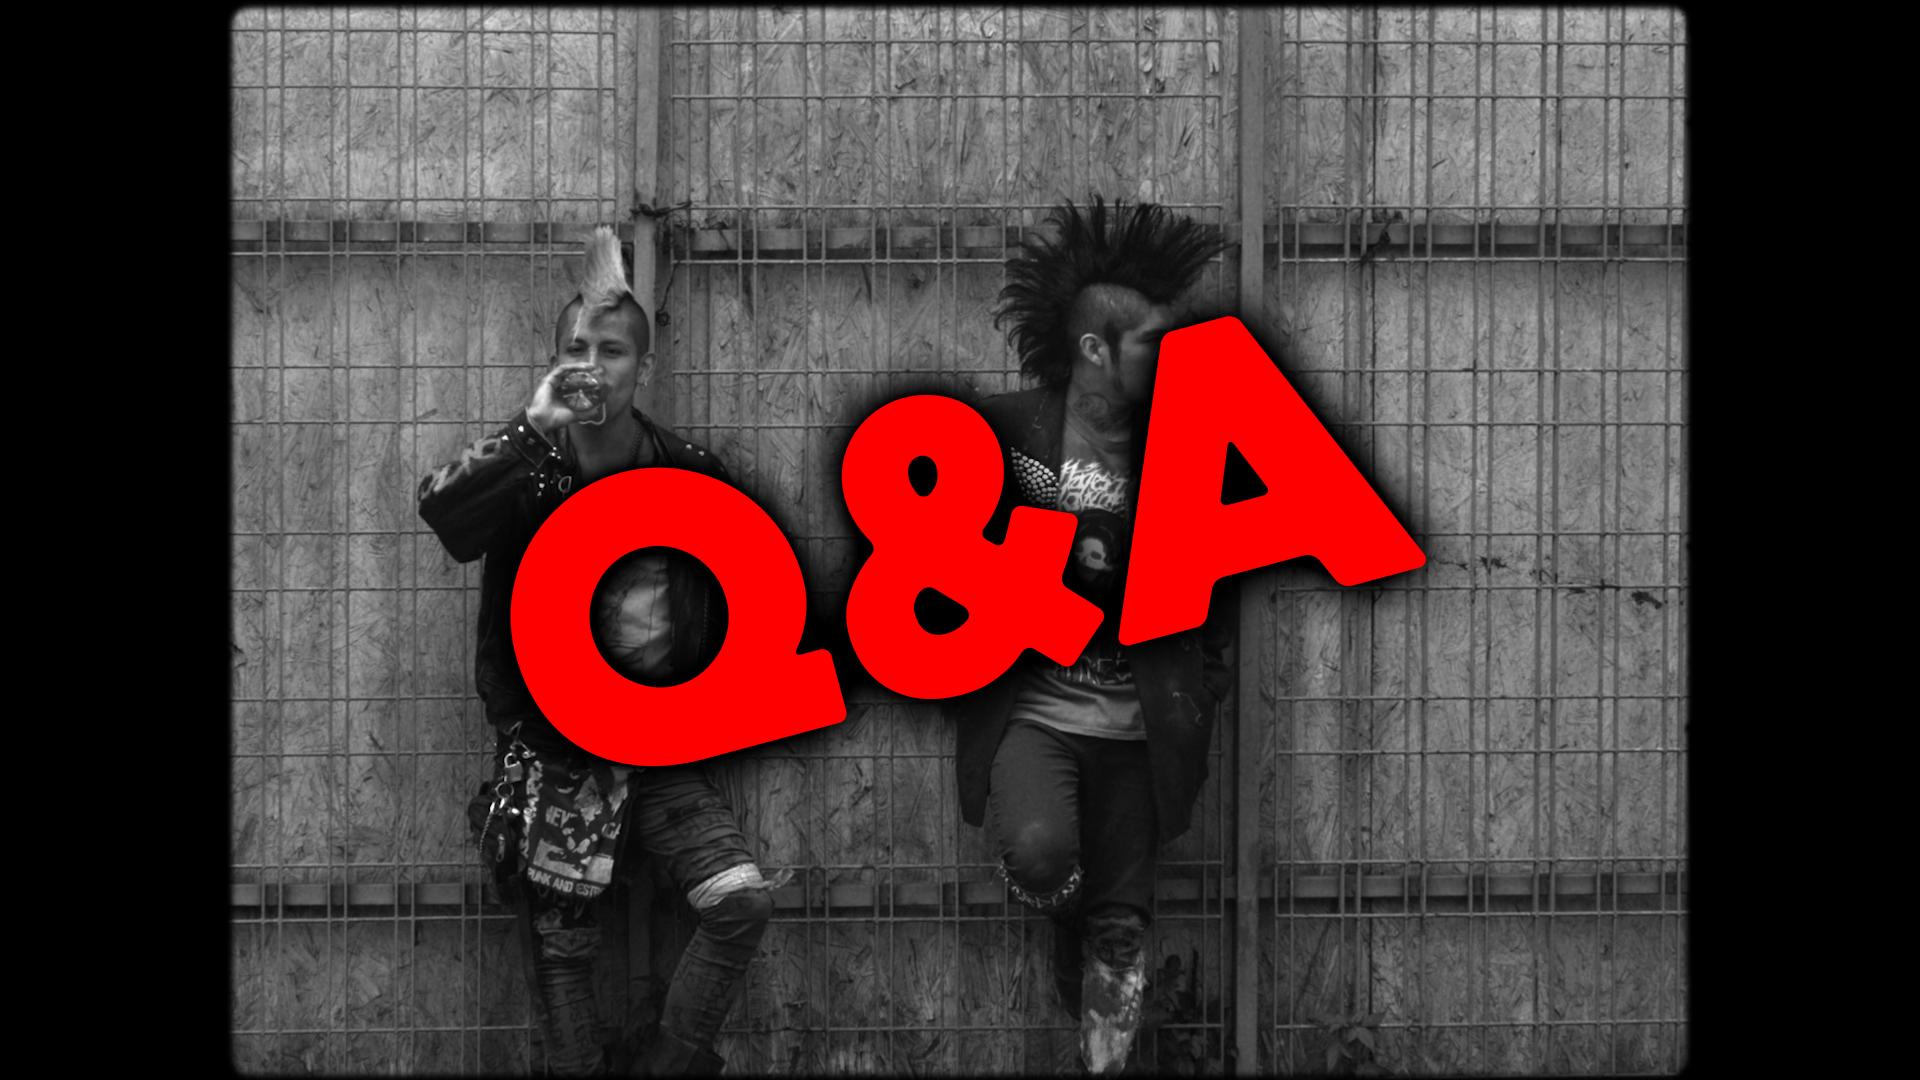 Q&A: C.I.A. (Club Internacional Aguerridos)